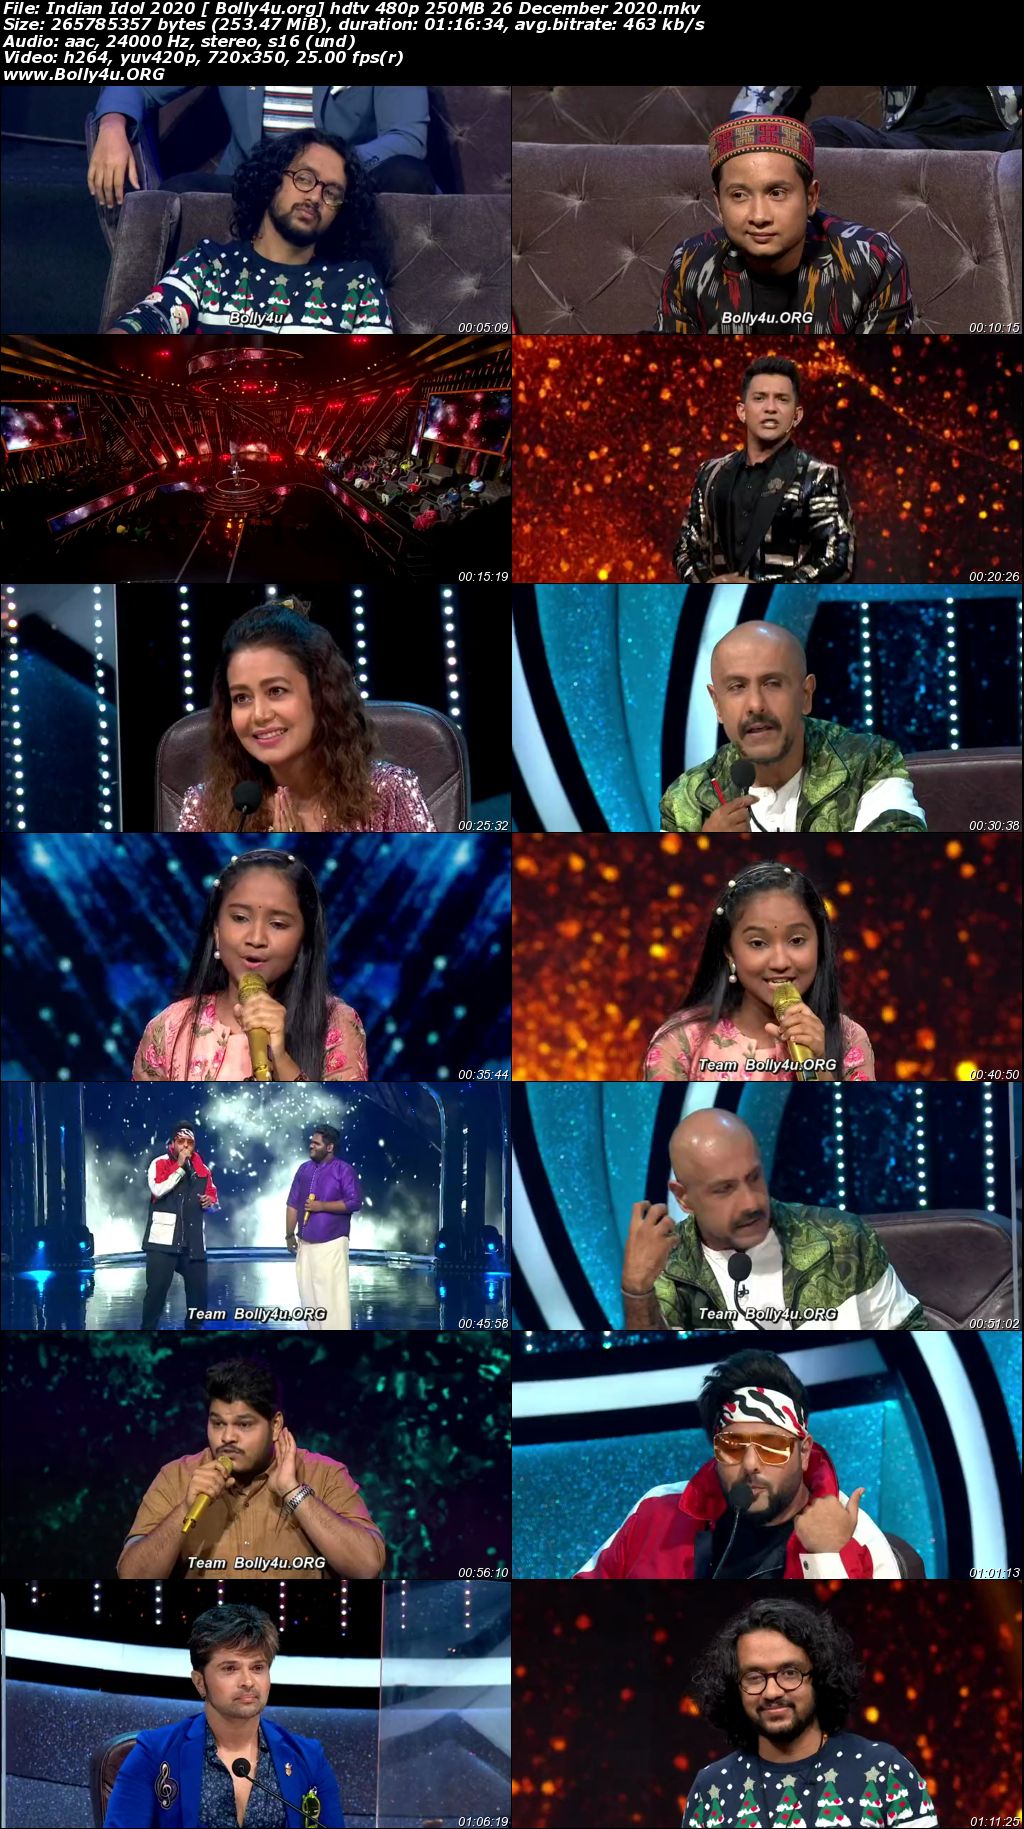 Indian Idol 2020 HDTV 480p 250MB 26 December 2020 Download